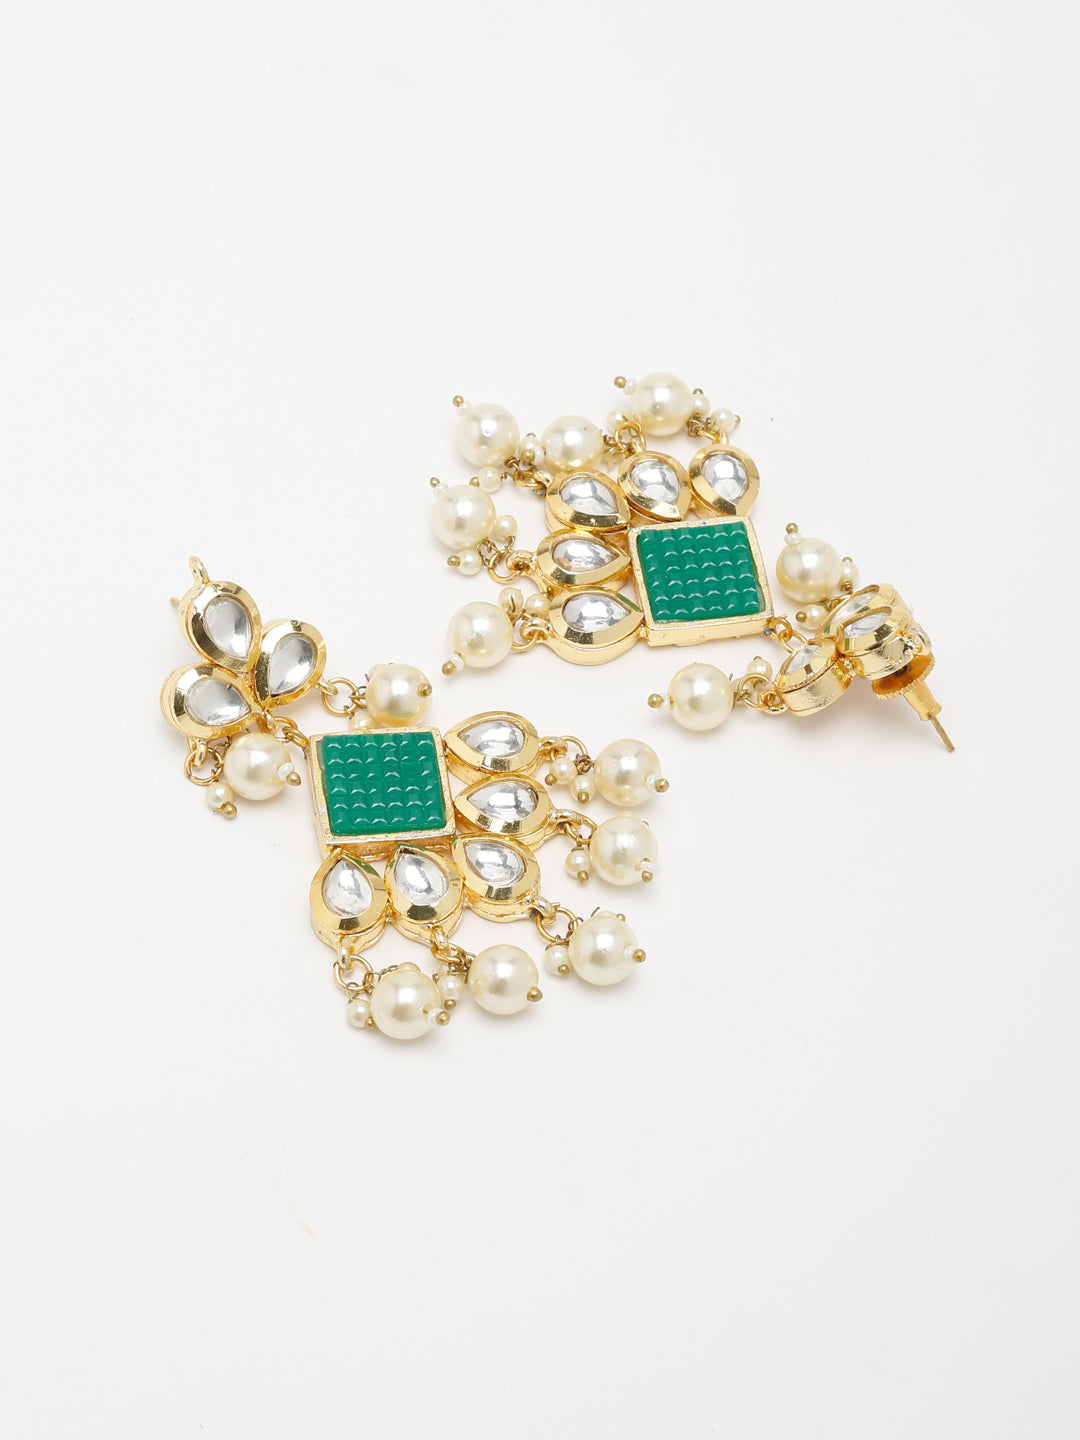 Women's Kundan Neckpiece with Earrings - Ruby Raang